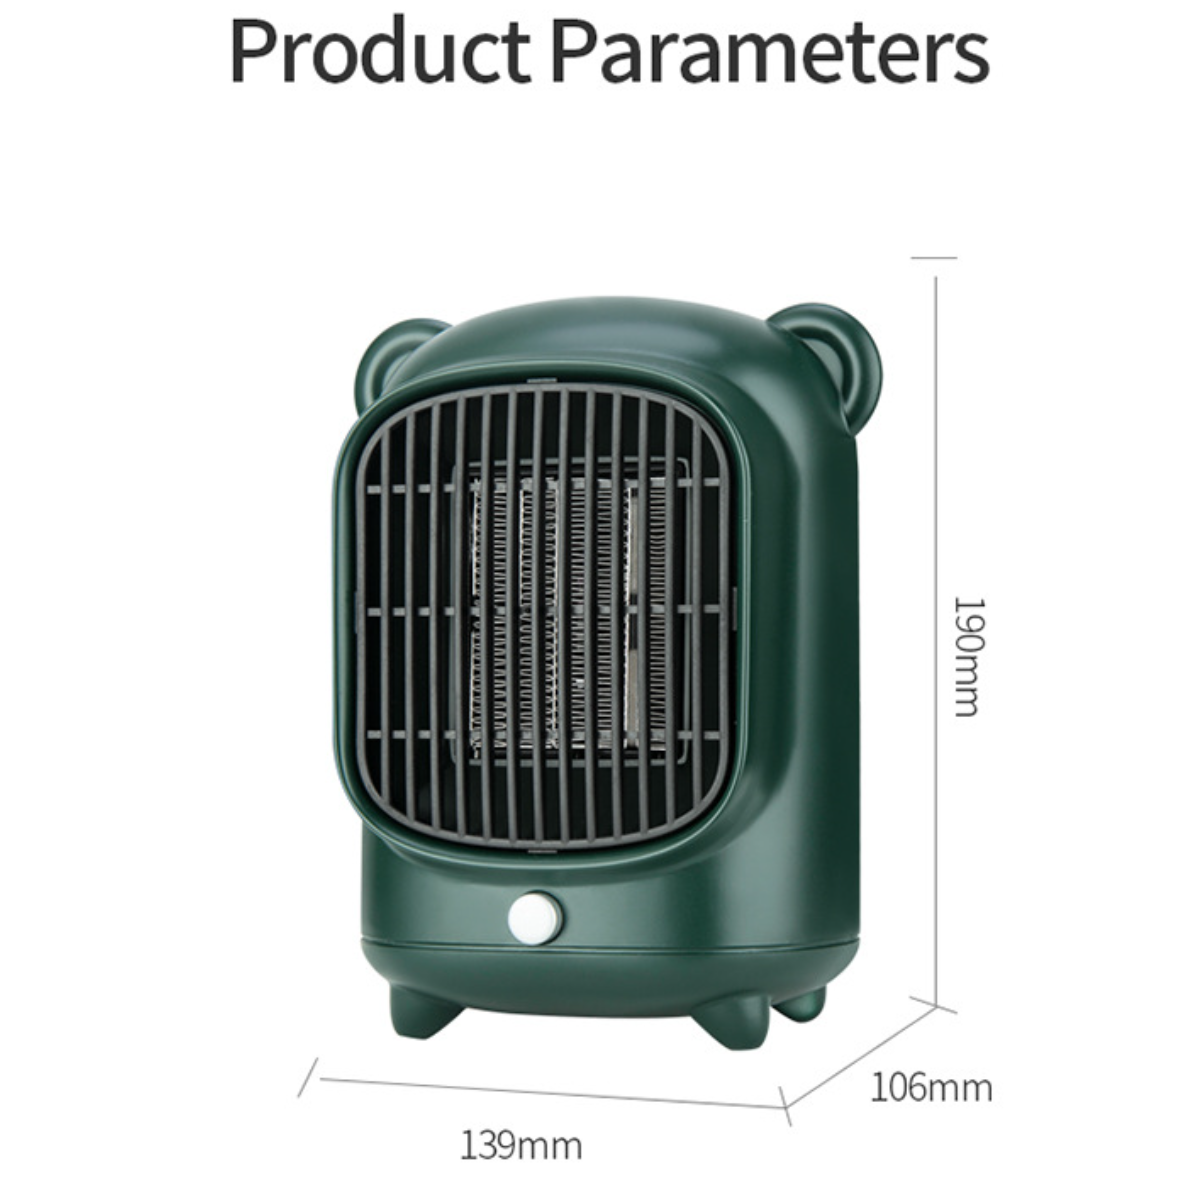 (500 sicheres geräuscharm, und Watt) Bear PTC-Schnellheizung, Electric Heater-White: UWOT Ausschalten leise Mini-Elektroheizung